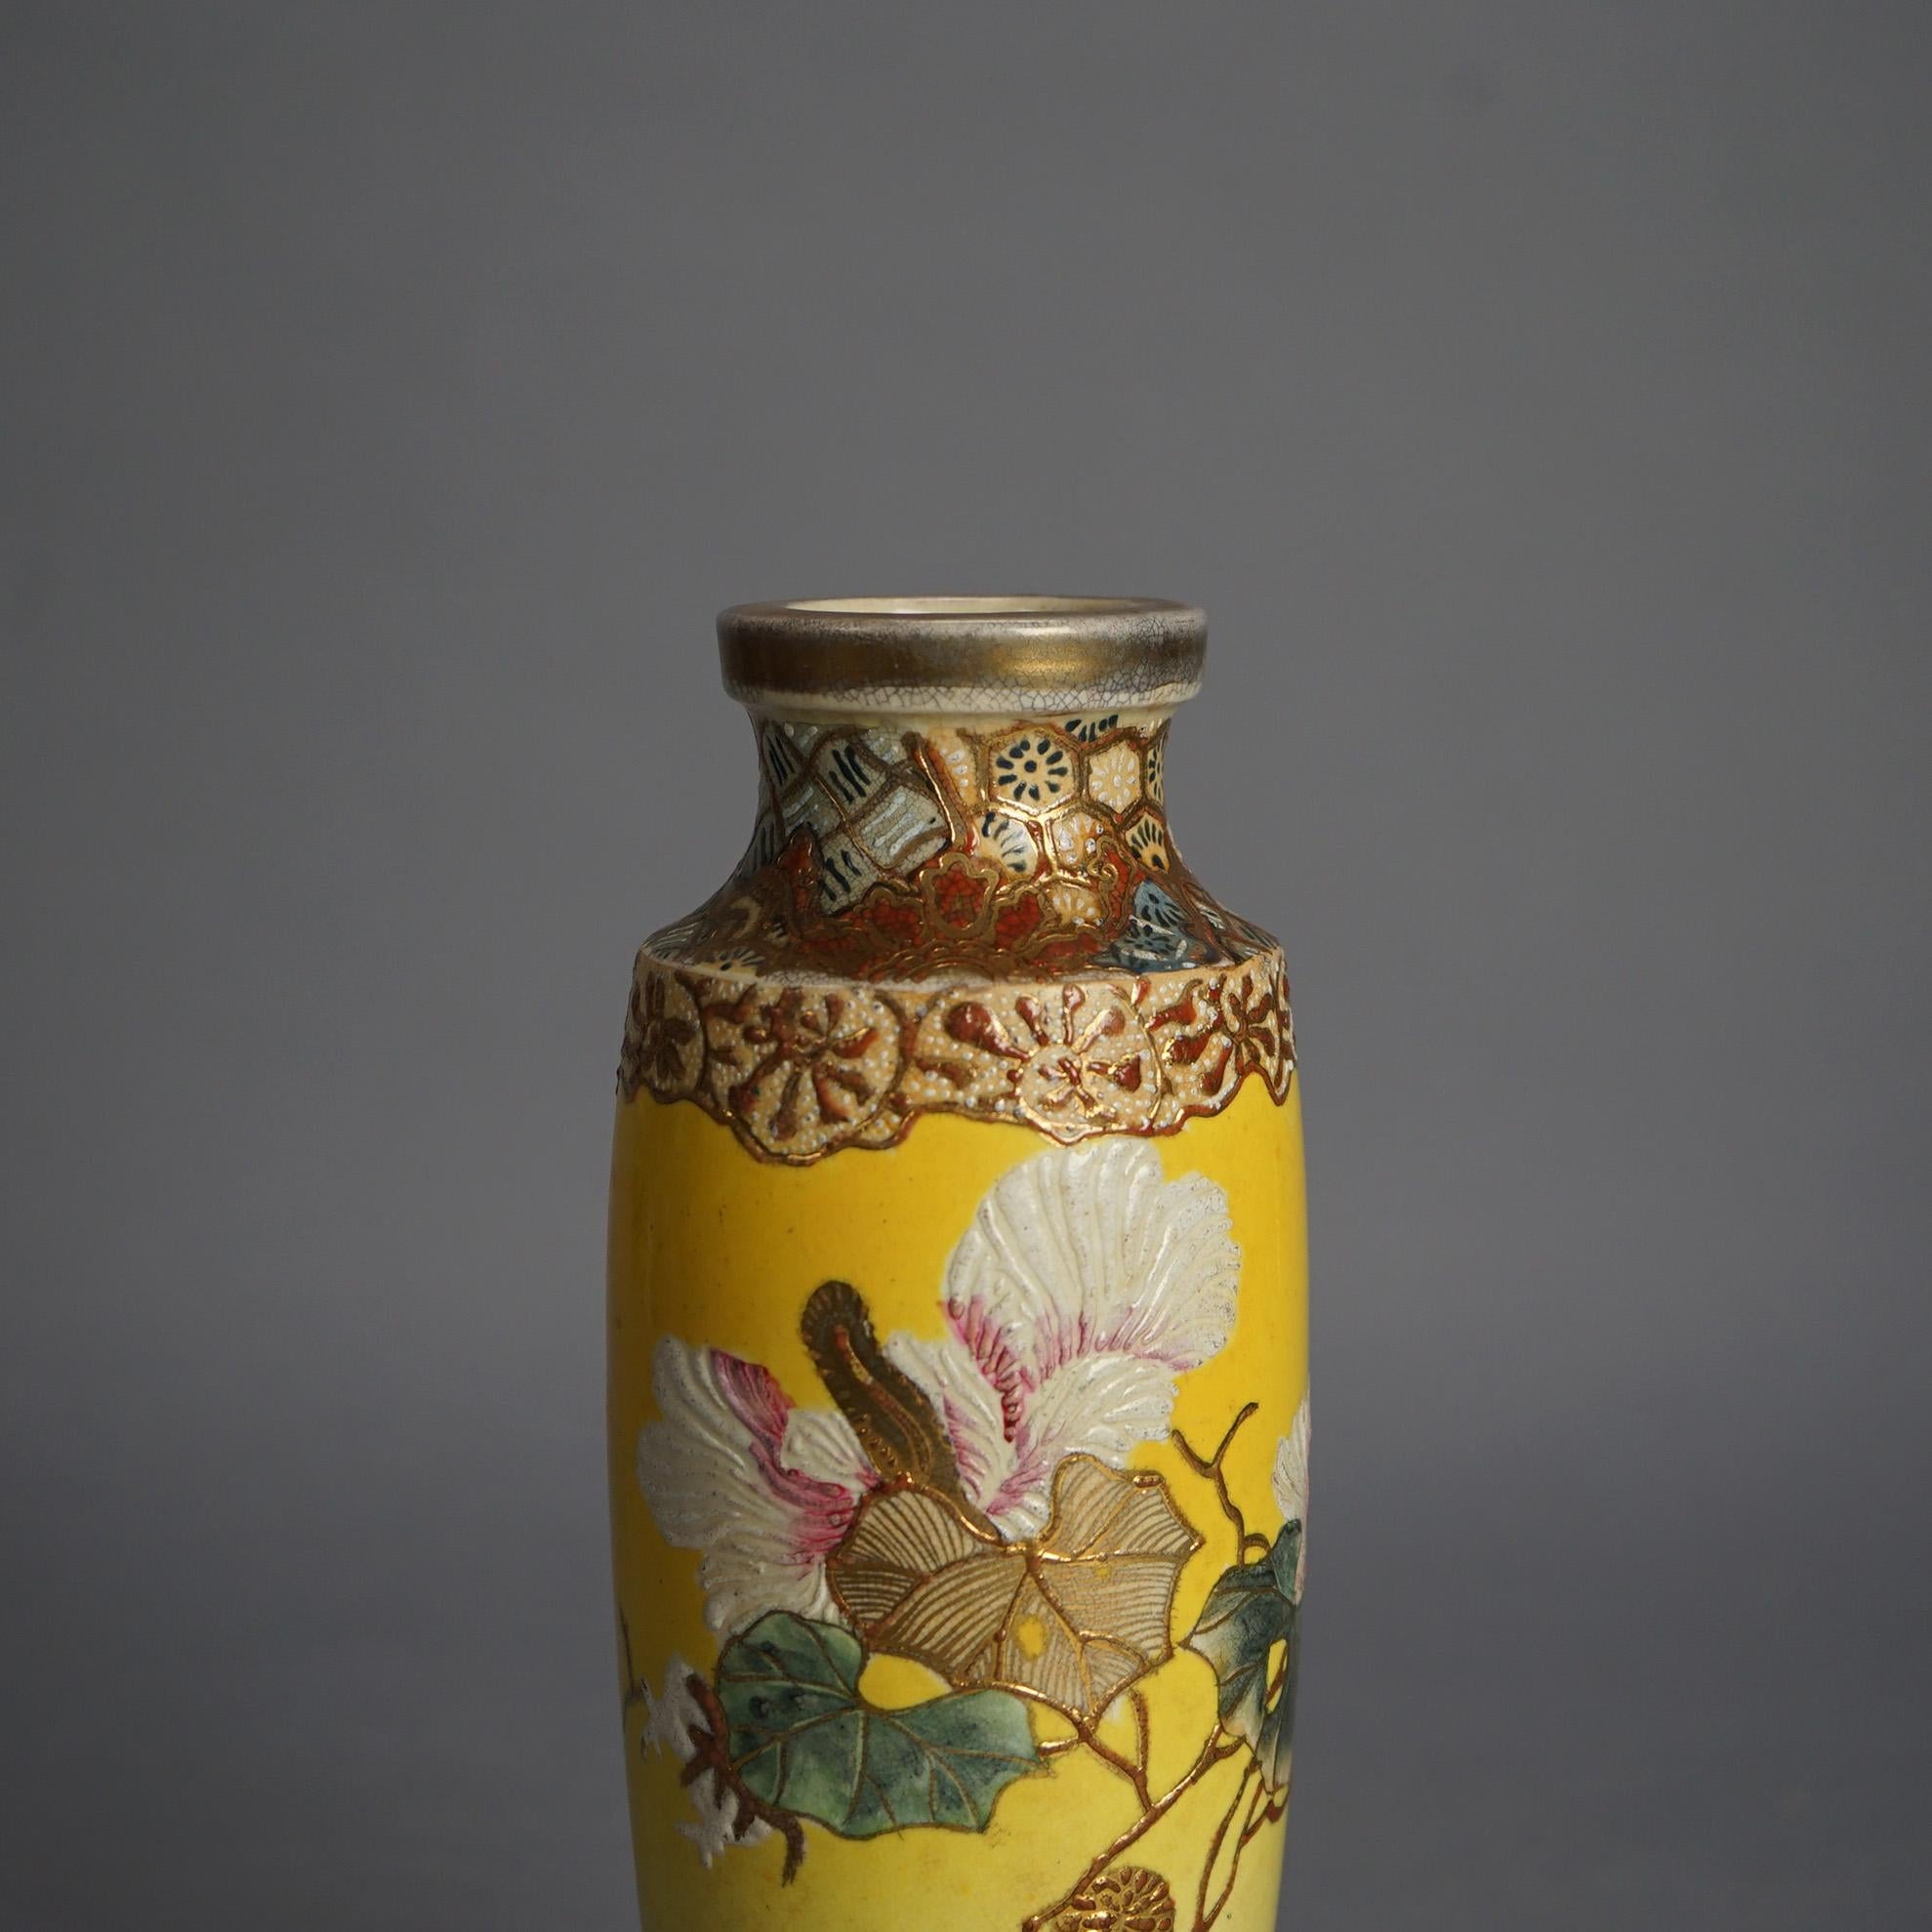 Antike japanische Satsuma Meiji Hand gemalt Floral & vergoldet dekoriert Porzellan Vase C1910

Maße - 10,25 